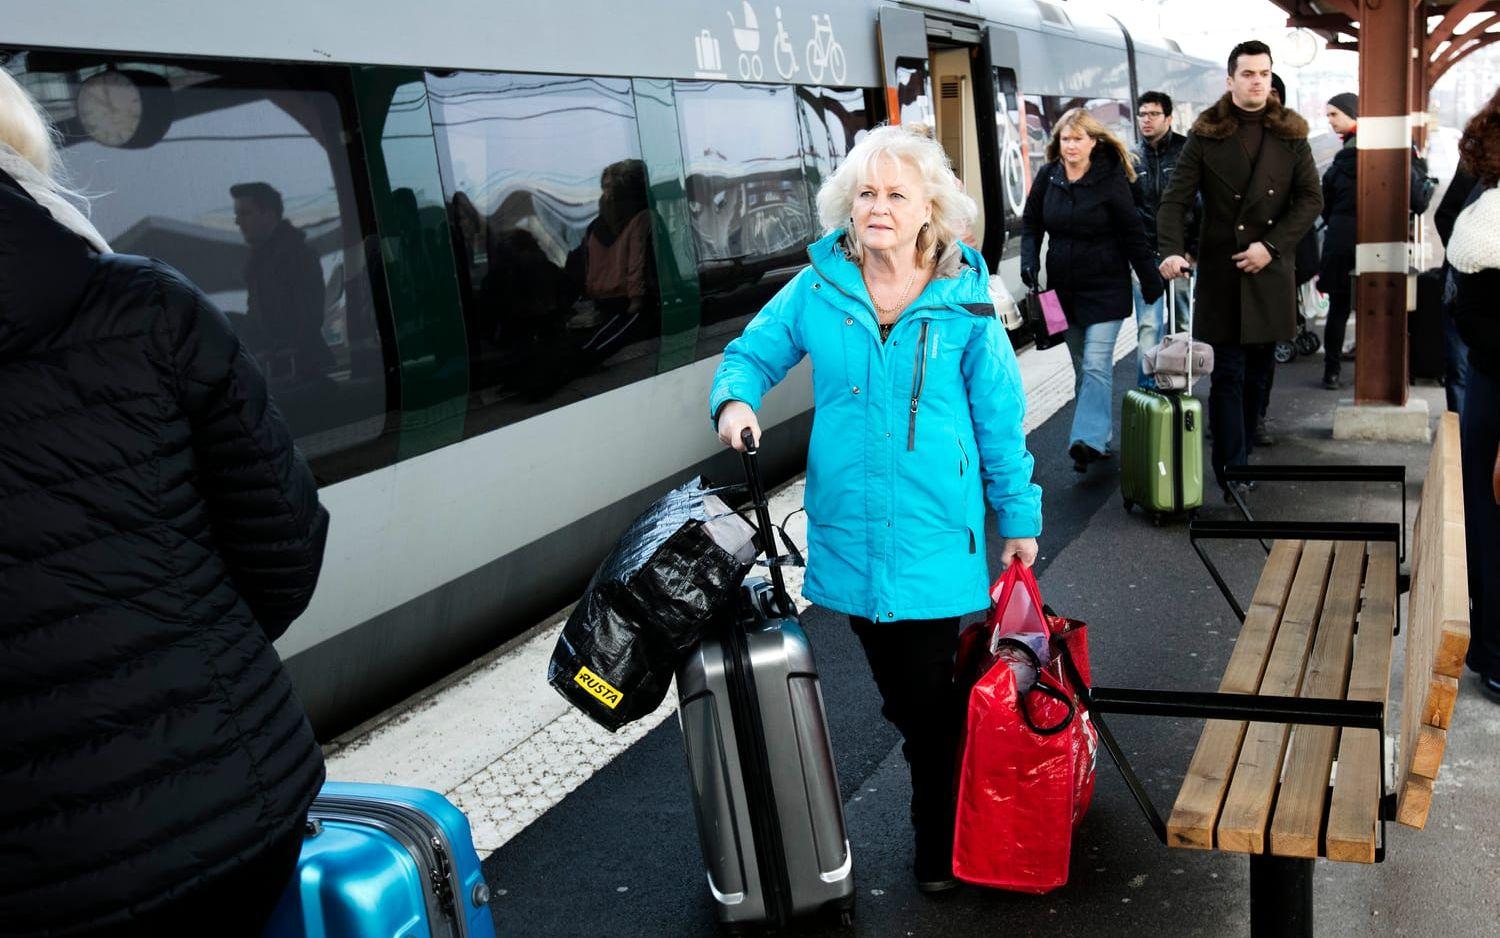 Stor ökning. Varje år görs ungefär 4,7 miljoner resor med Öresundståg i Halland. Det är mer än en fördubbling ­sedan Hallandstrafiken lanserade Öresundstågen för åtta år sedan. Bild: Patrik Ljungman